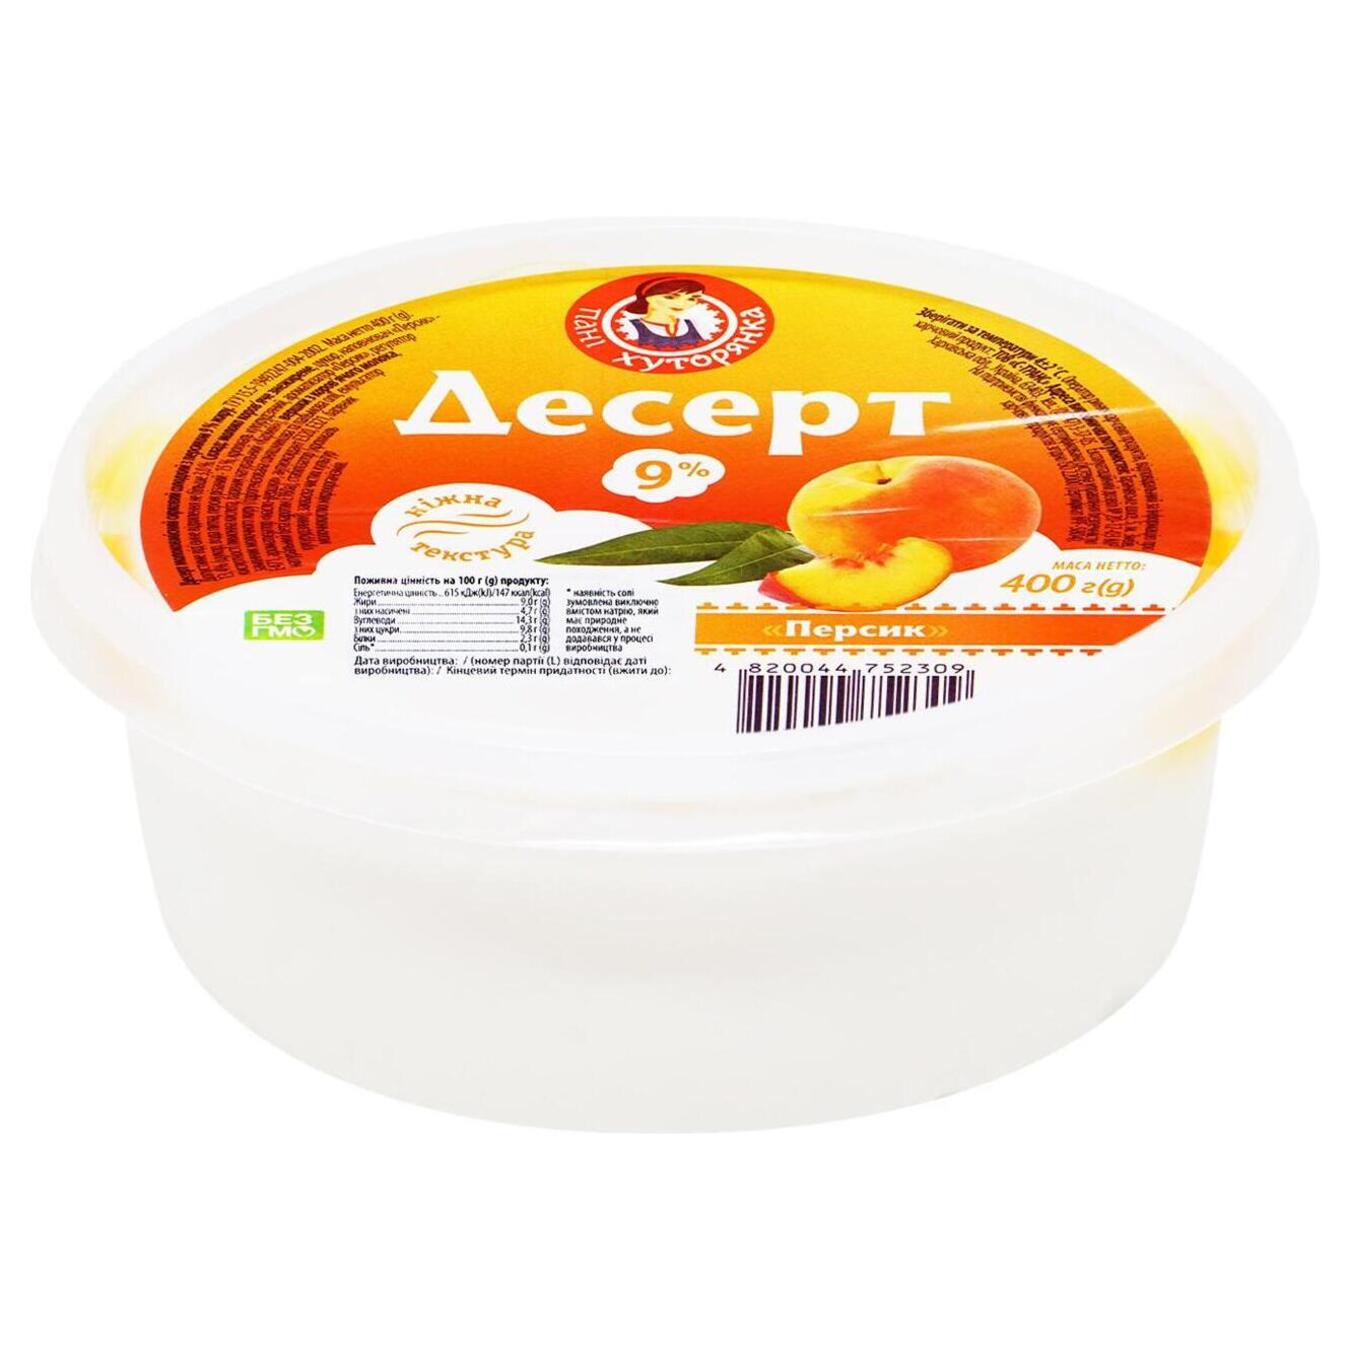 Dessert Pani Khutoryanka peach bucket packaged 9% 400g